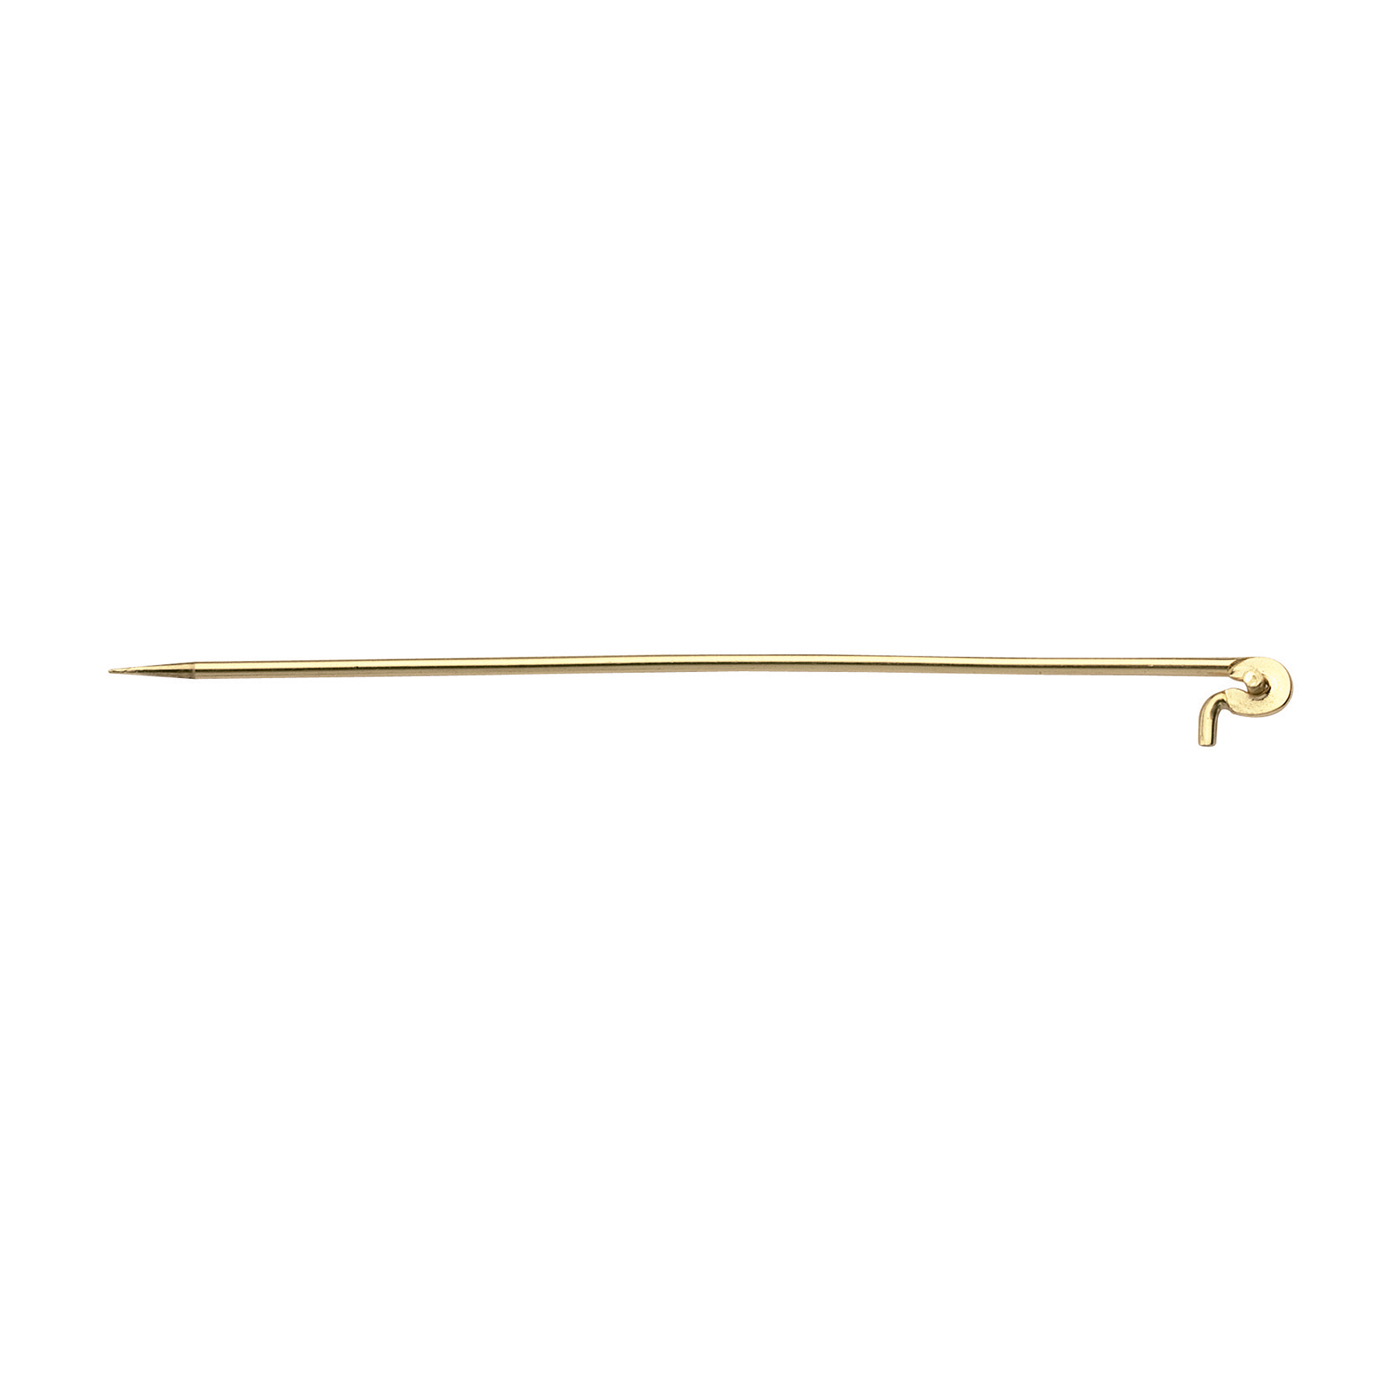 Brooch Needle, 333G, 60 mm - 1 piece